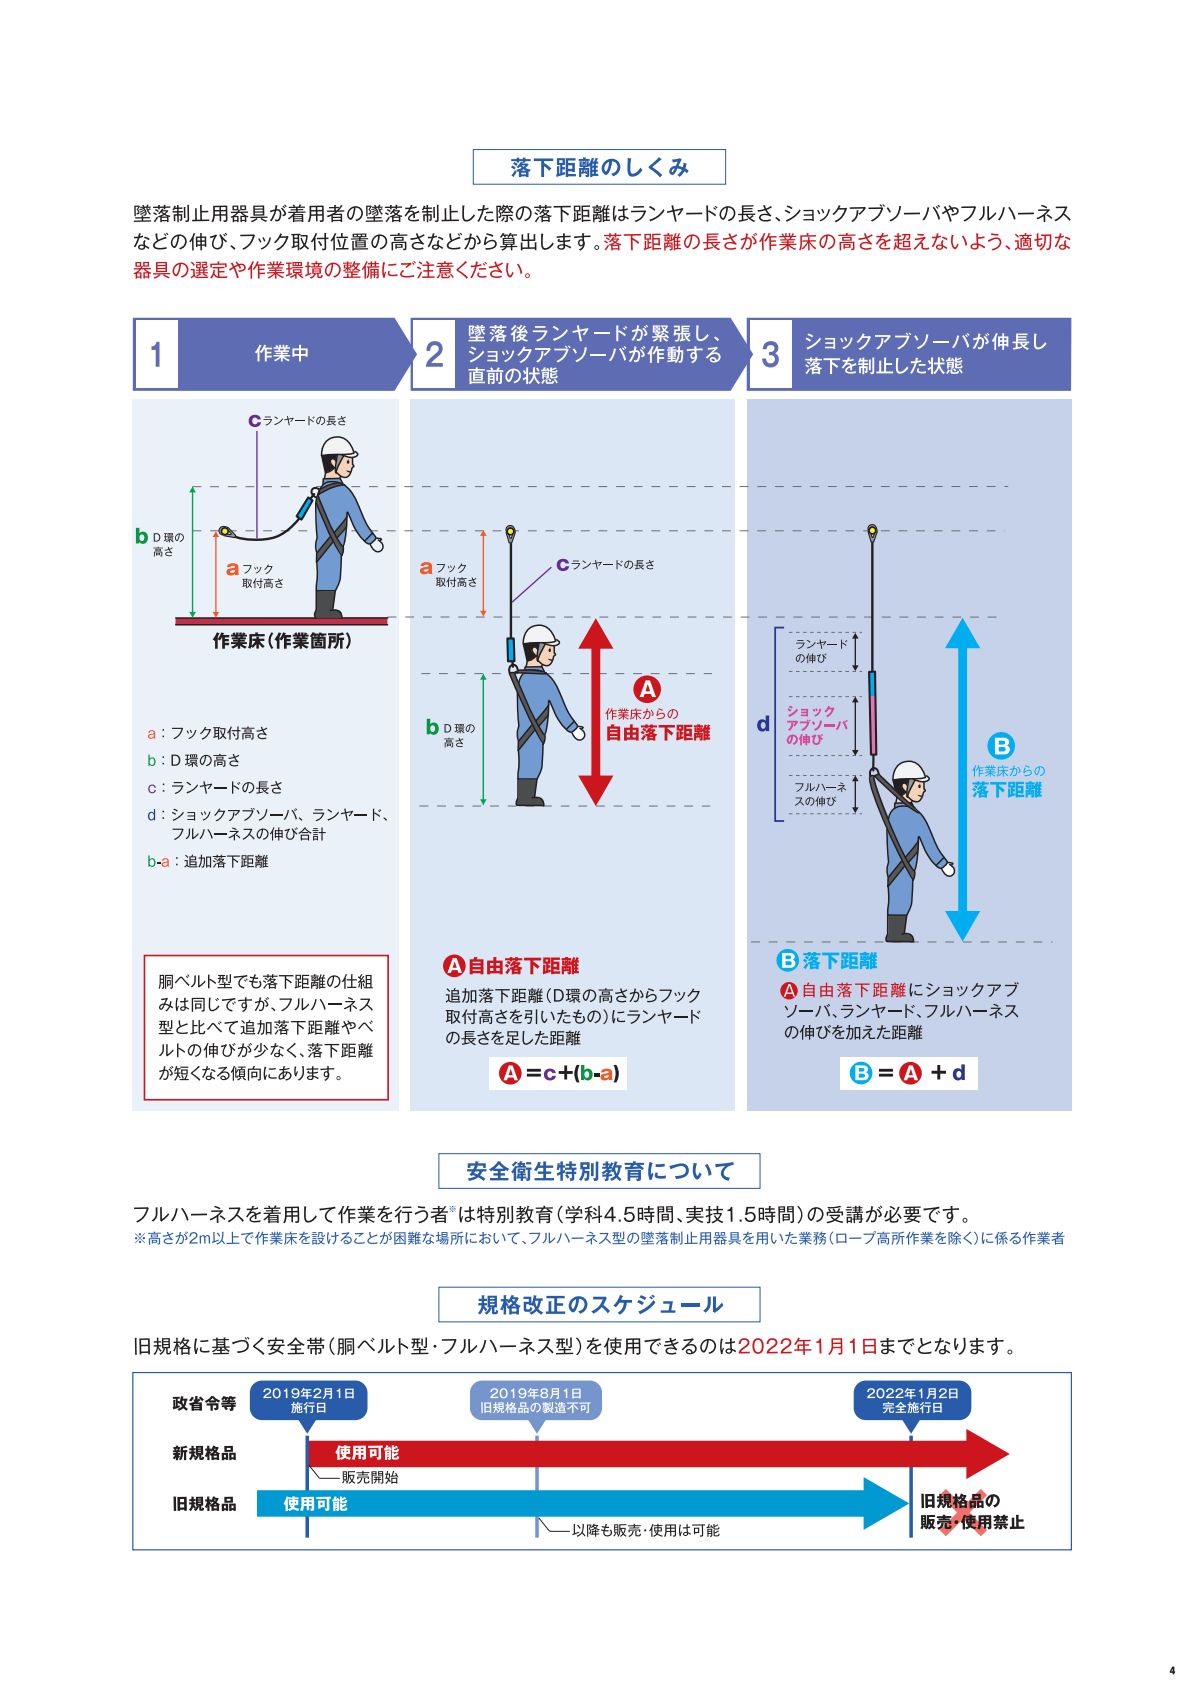 藤井電工カタログ「フルハーネス型安全帯」着用義務についての解説2